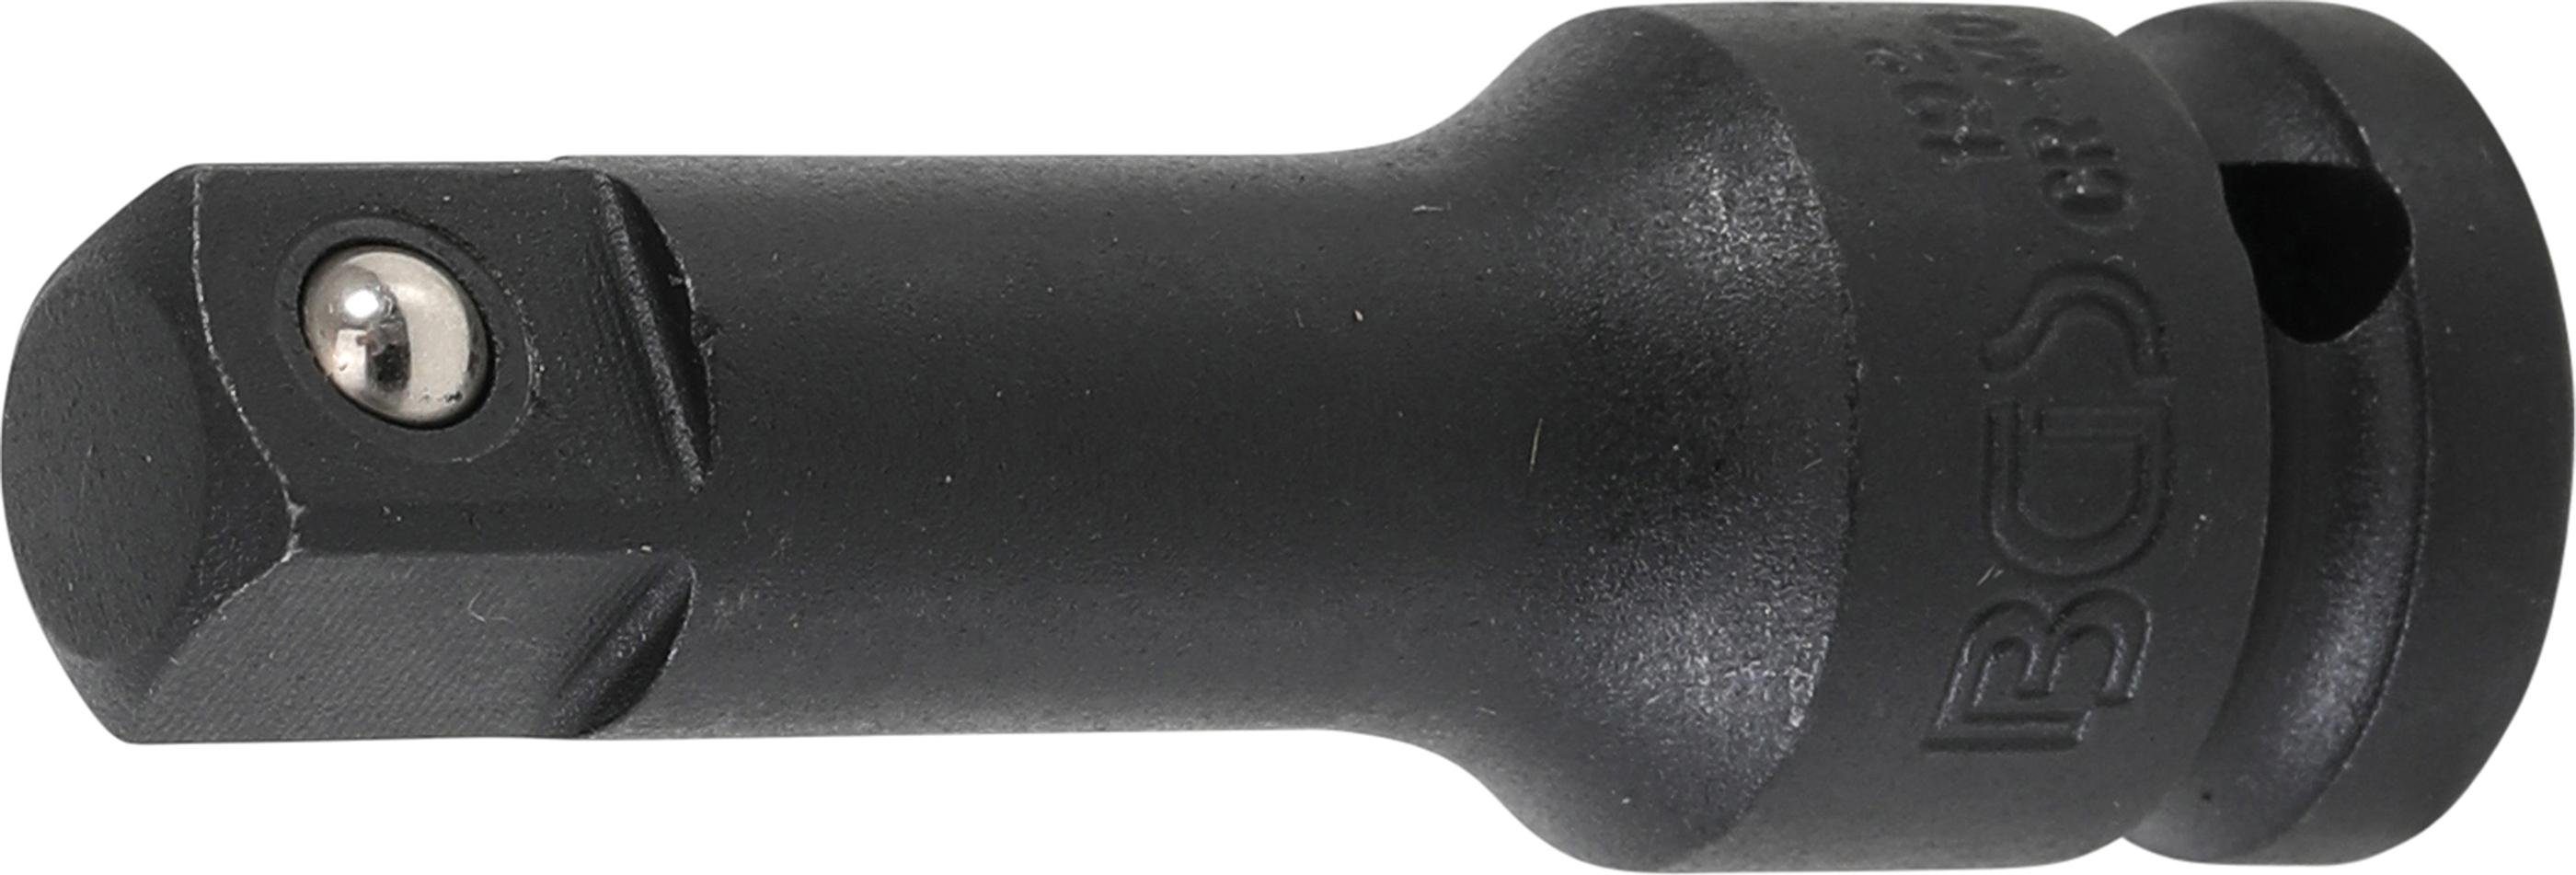 BGS technic Ratschenringschlüssel Kraft-Verlängerung, 12,5 mm (1/2), 75 mm